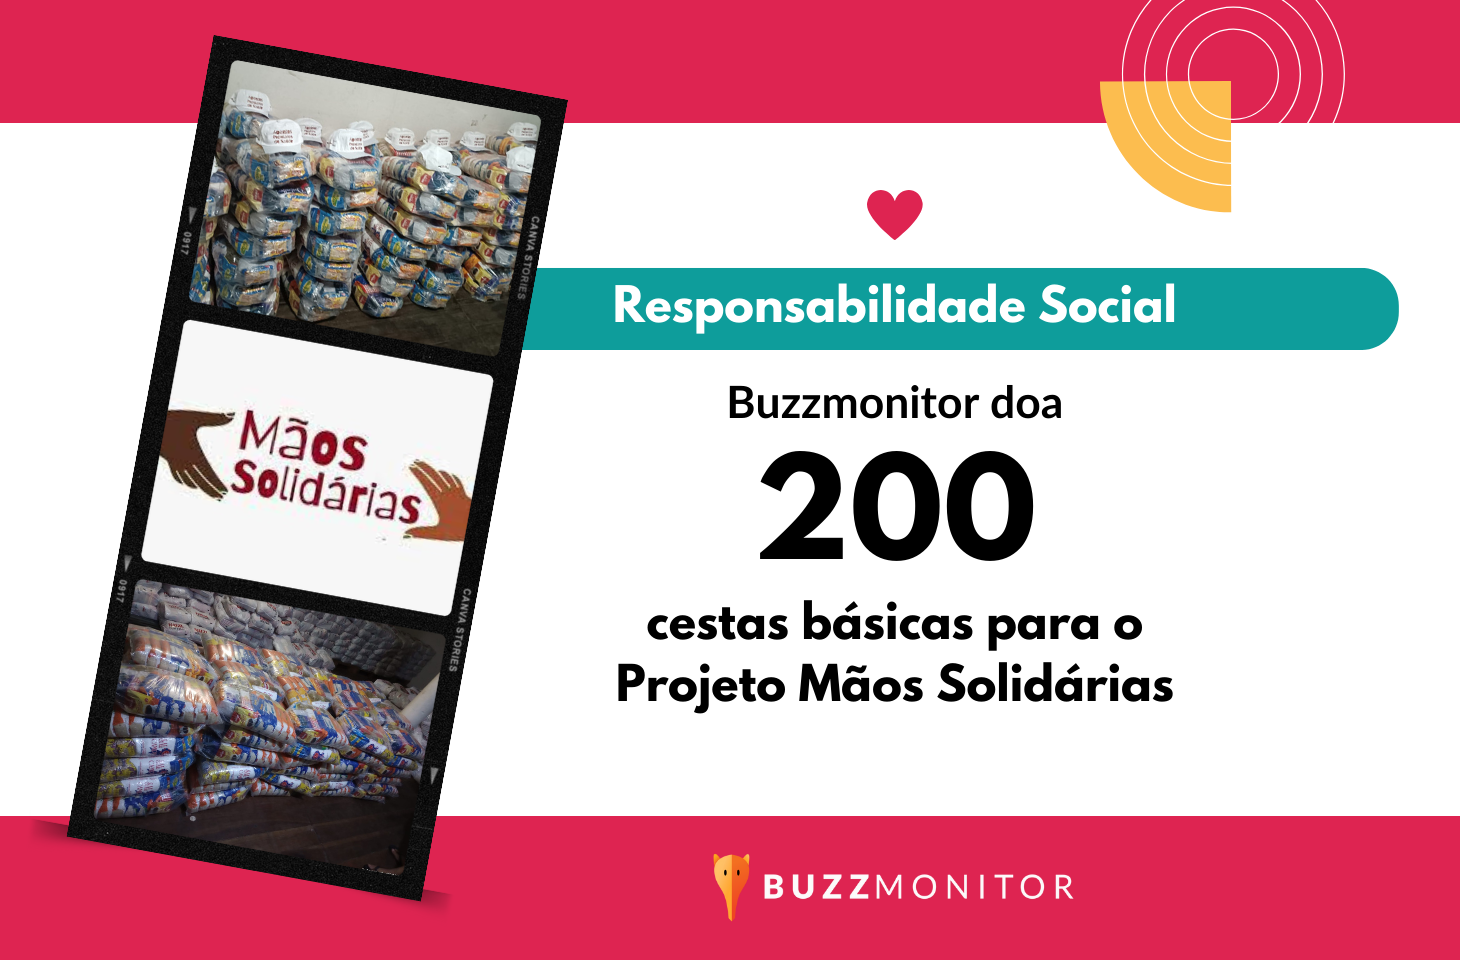 Responsabilidade Social: Buzzmonitor doa 200 cestas básicas para o Projeto Mãos Solidárias